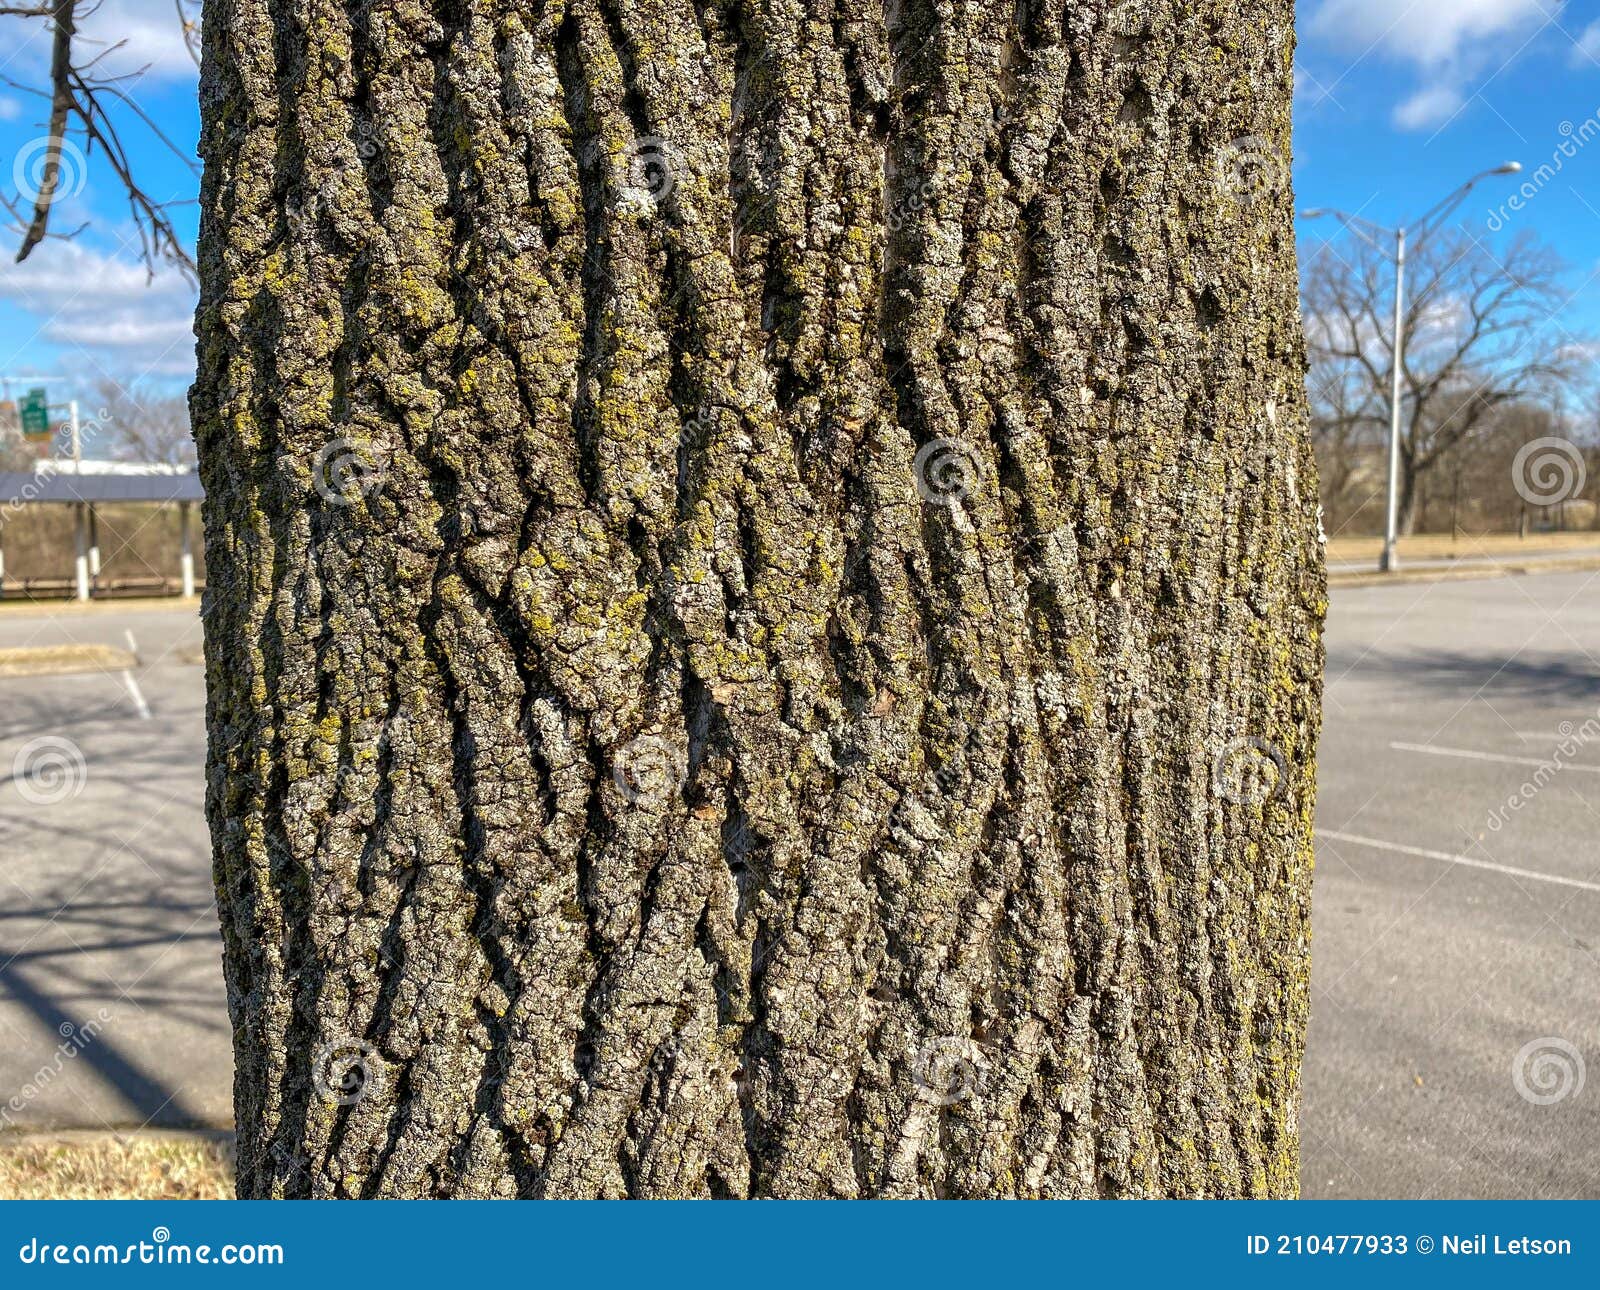 tree identification: bur oak quercus macrocarpa